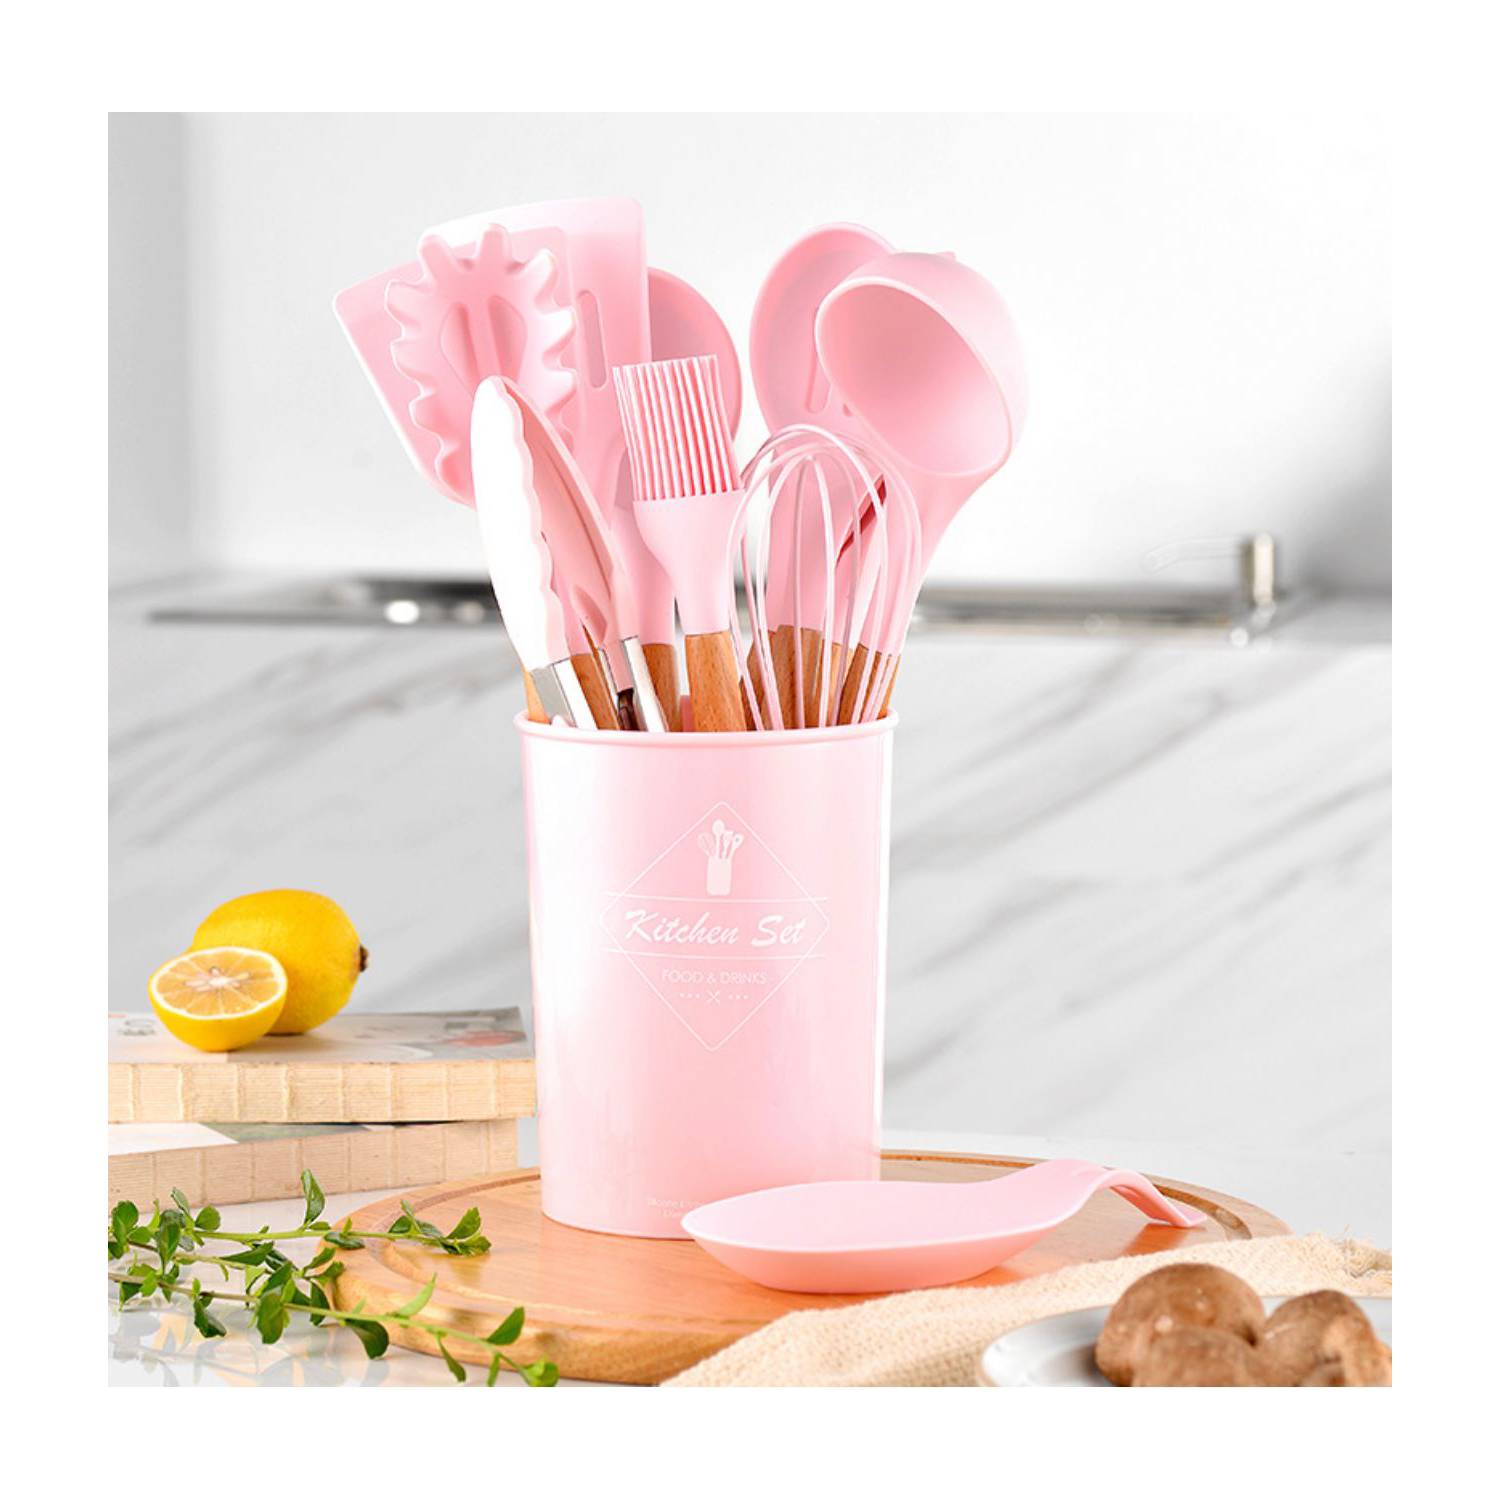 Utensilios de cocina de silicon con soporte, color rosa 12 piezas. –  Kochstelle